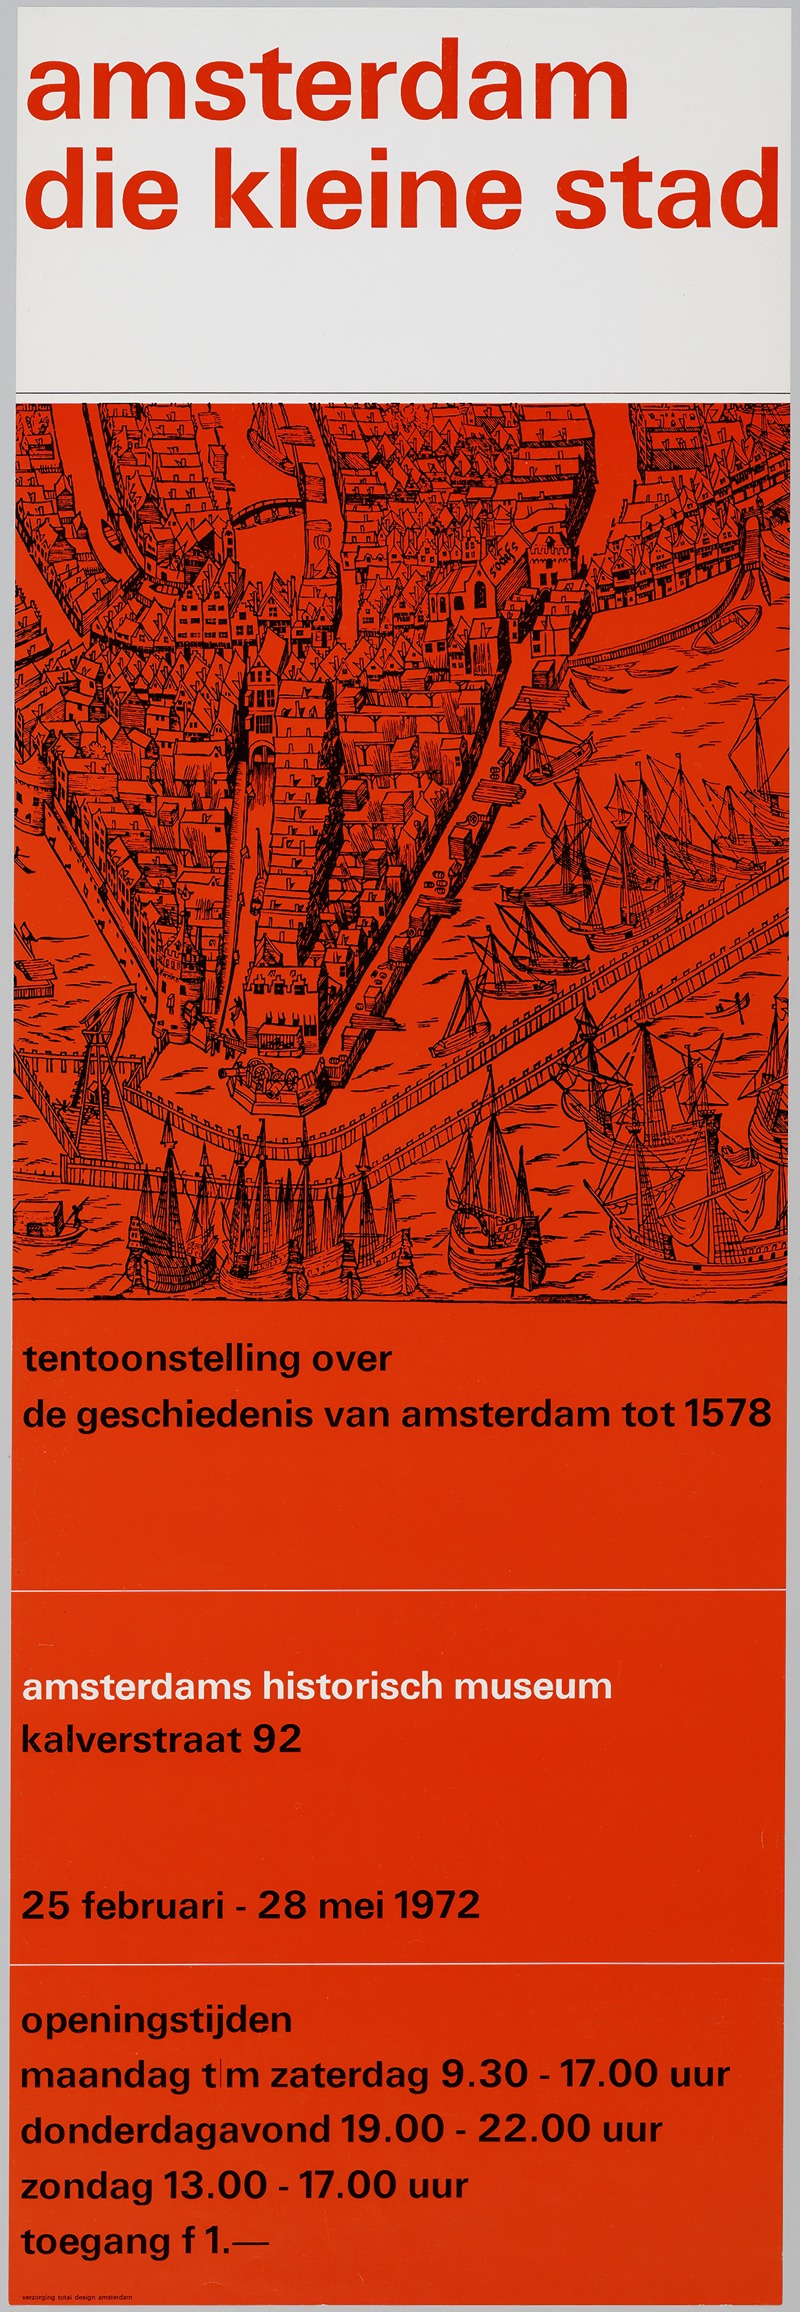 Jolijn van de Wouw - affiche voor tentoonstelling Amsterdam die kleine stad